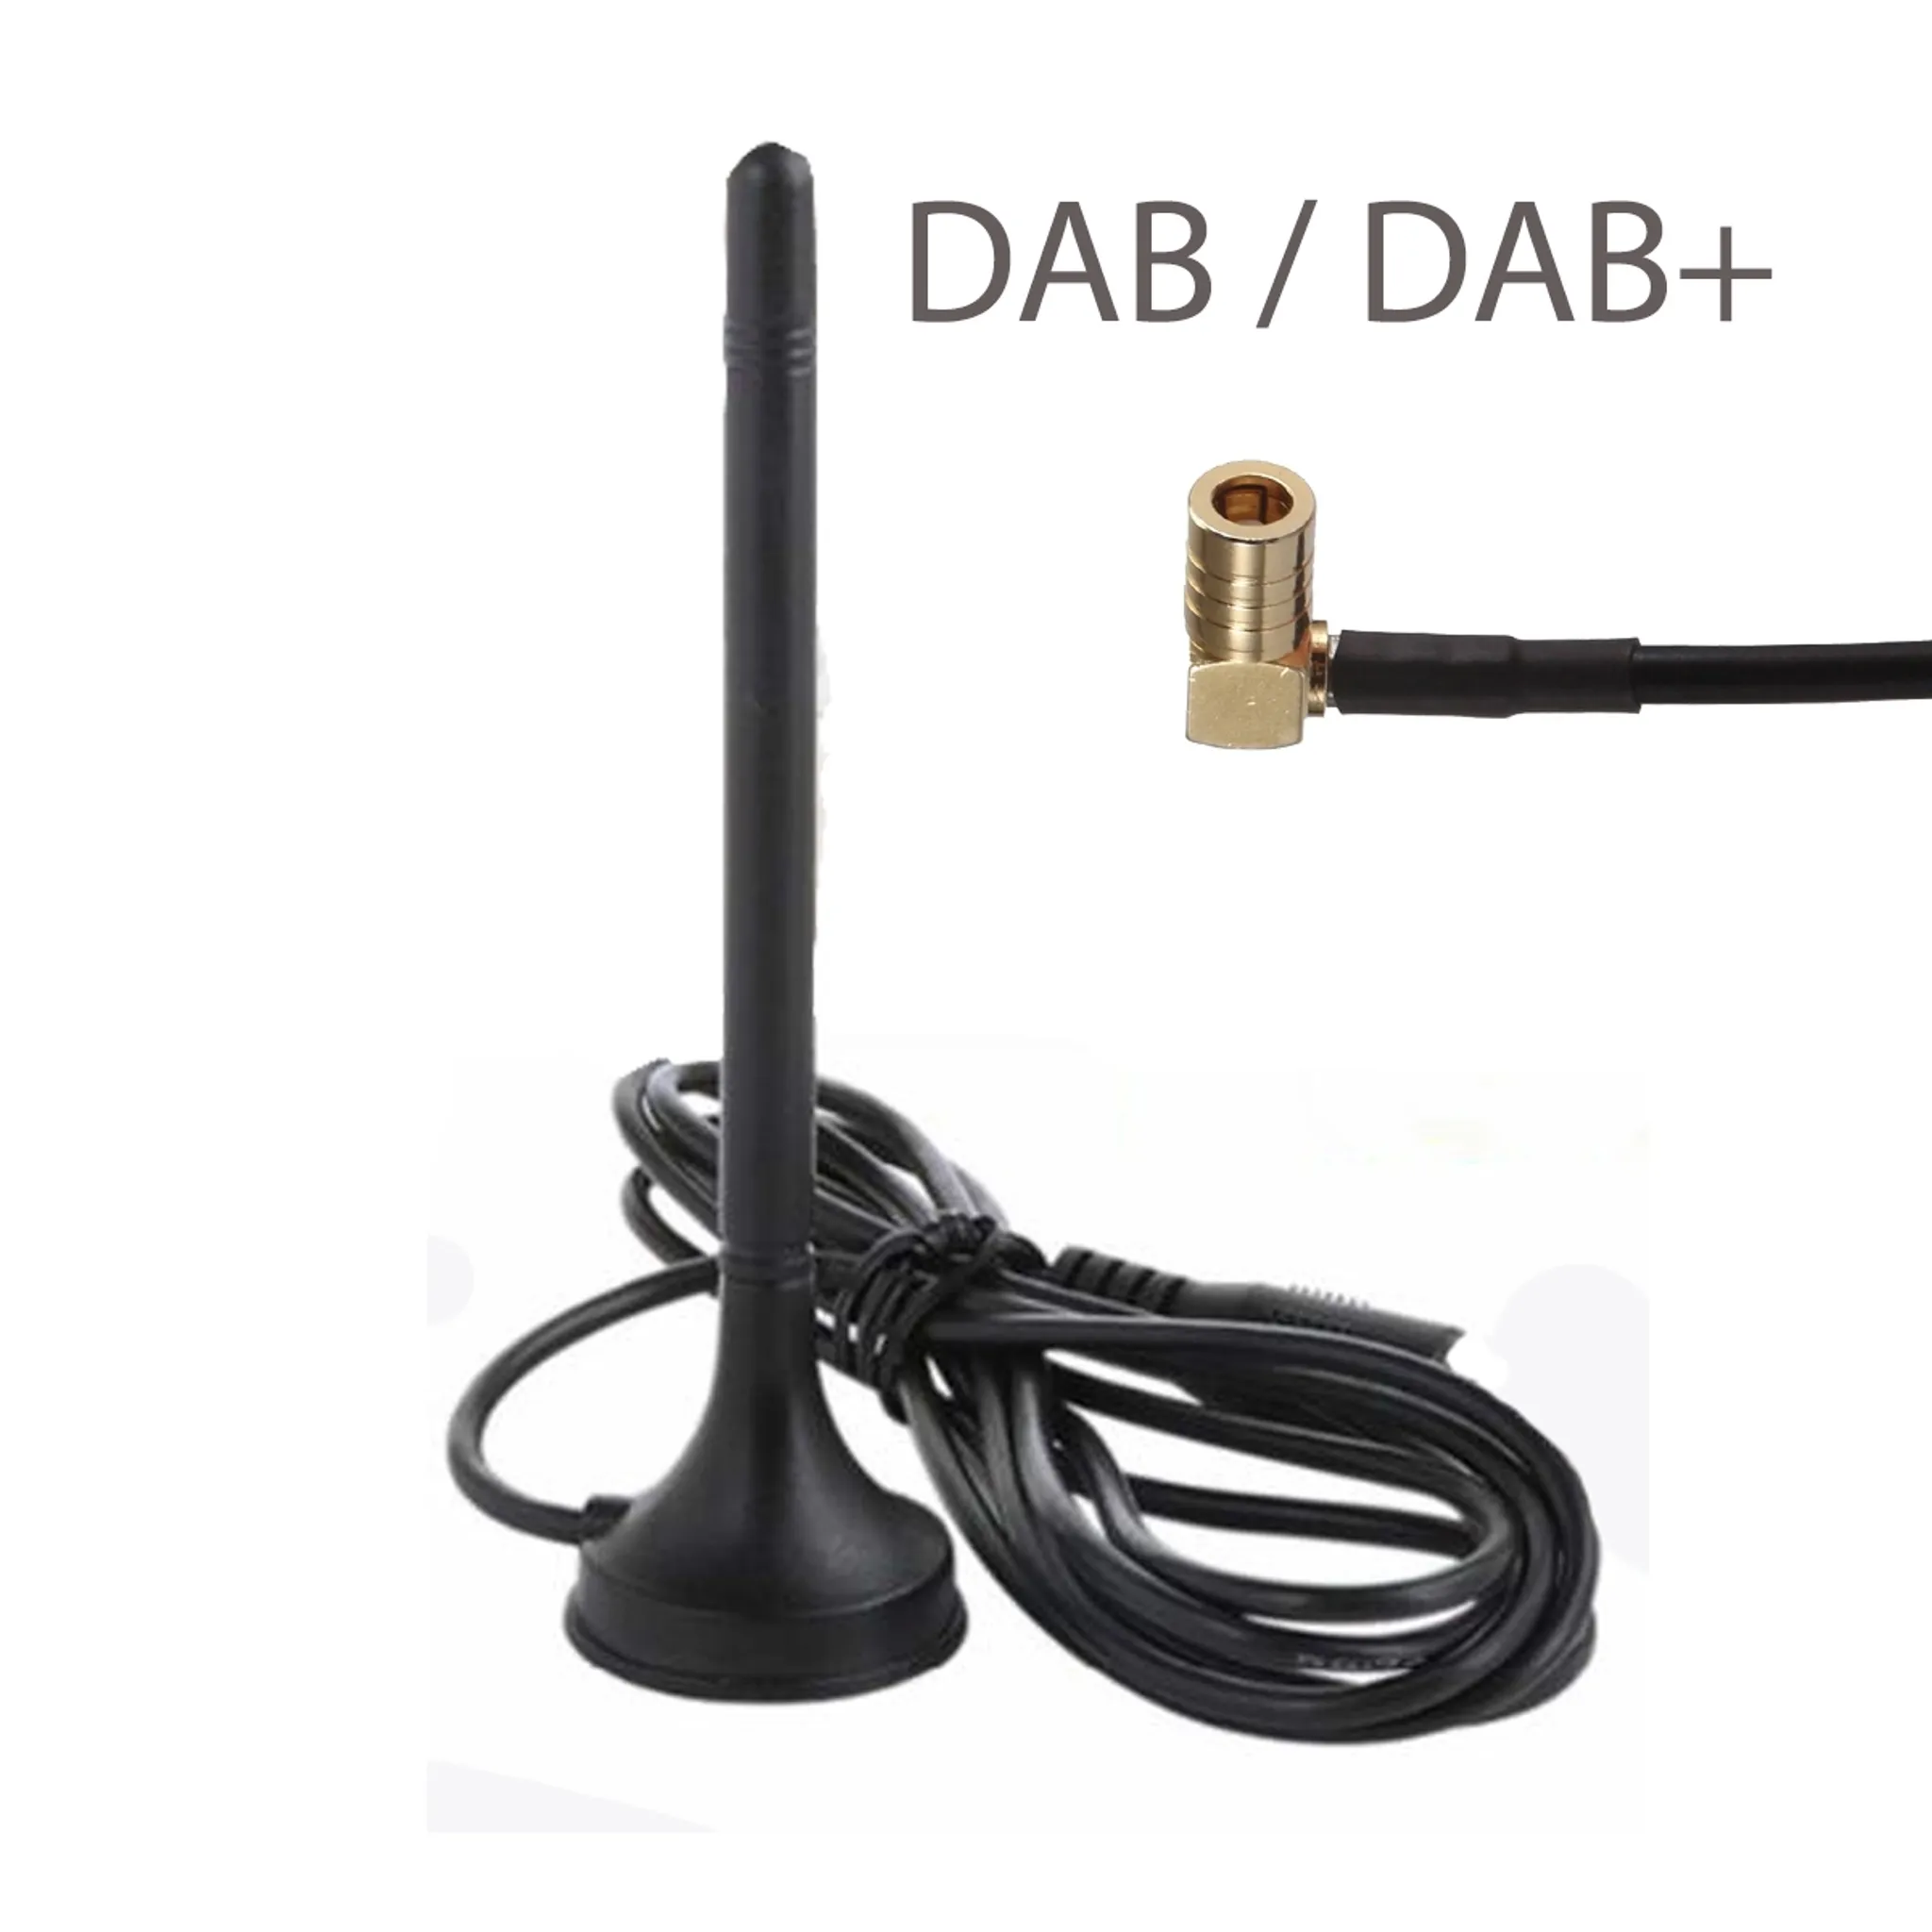 DAB Zimmerantenne / DAB+ Antenne für